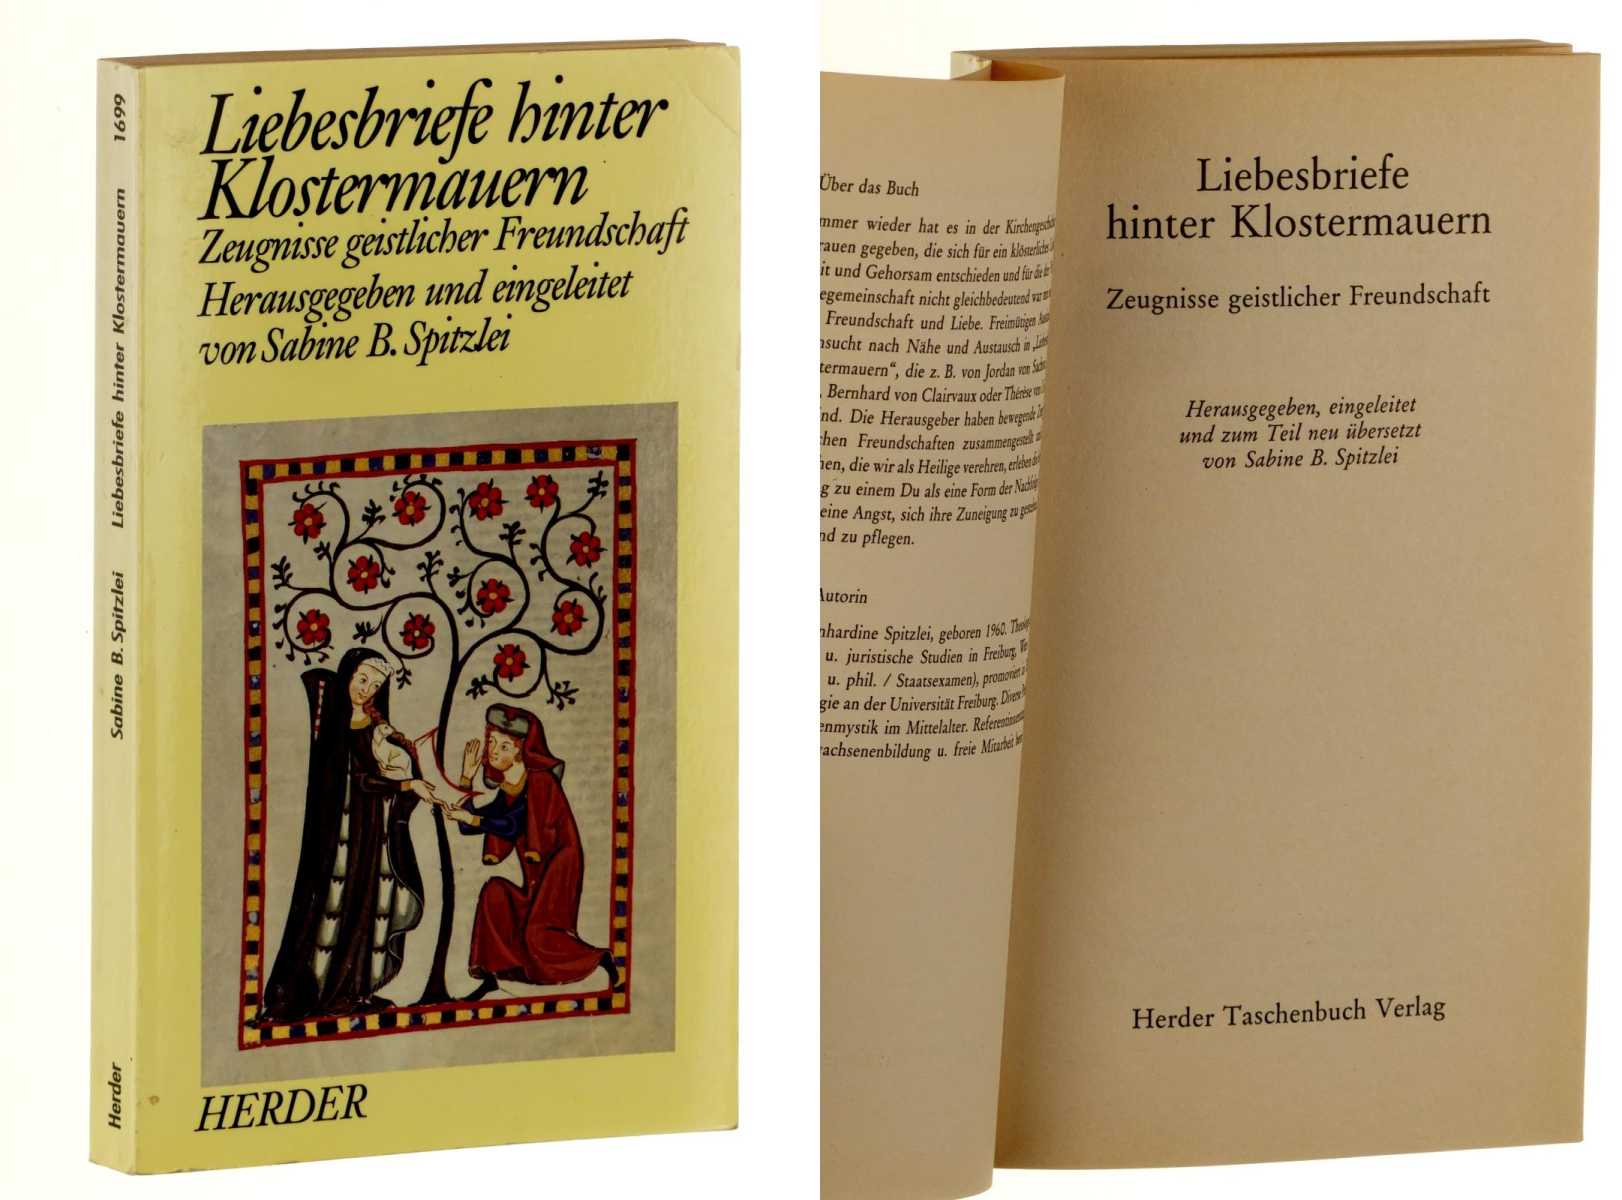 Spitzlei, Sabine B. (Hrsg.):  Liebesbriefe hinter Klostermauern. Zeugnisse geistlicher Freundschaft. Hrsg., eingeleitet u. zum Teil neu übers. von Sabine B. Spitzlei. 